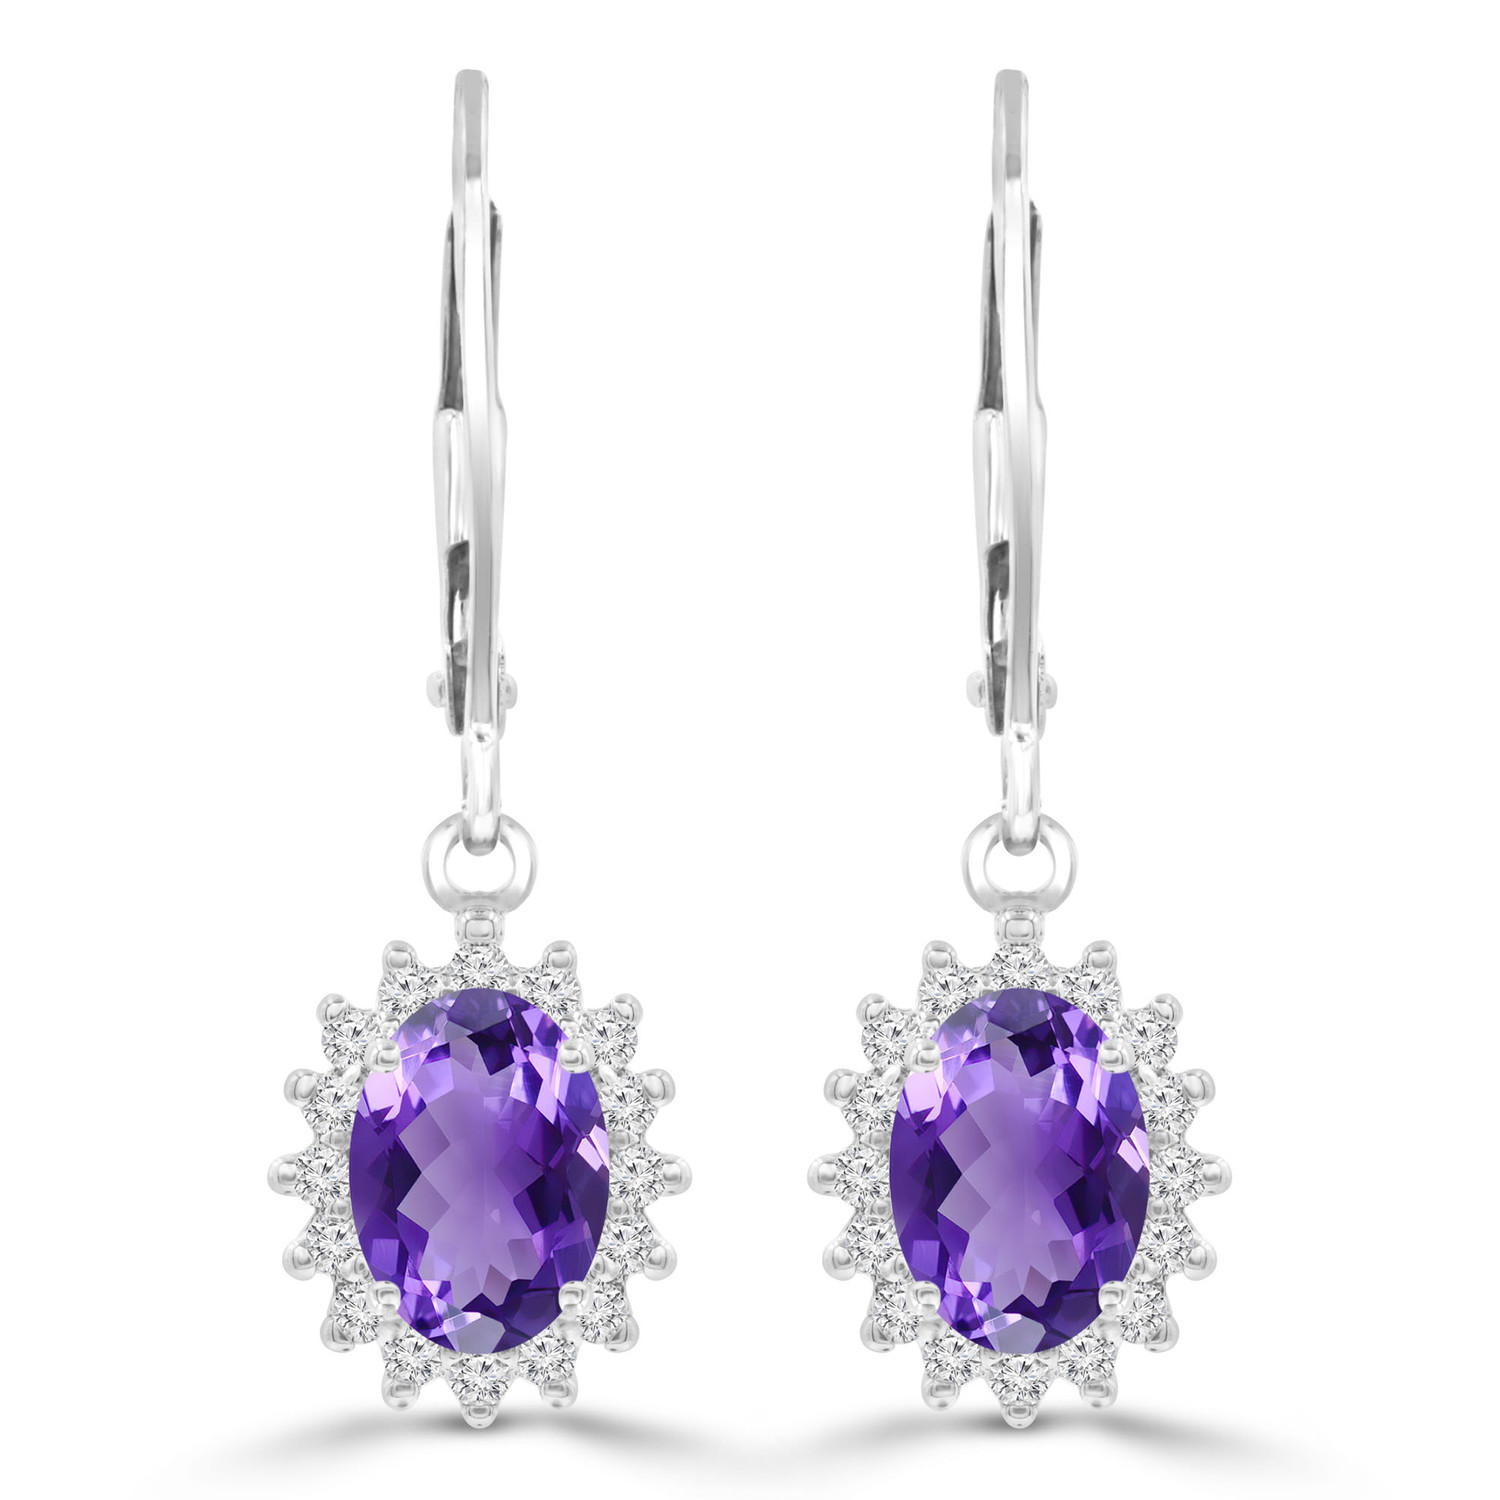 1 4/5 CTW Oval Purple Amethyst Diamond Oval Halo Drop/Dangle Earrings in 14K White Gold (MDR220054)